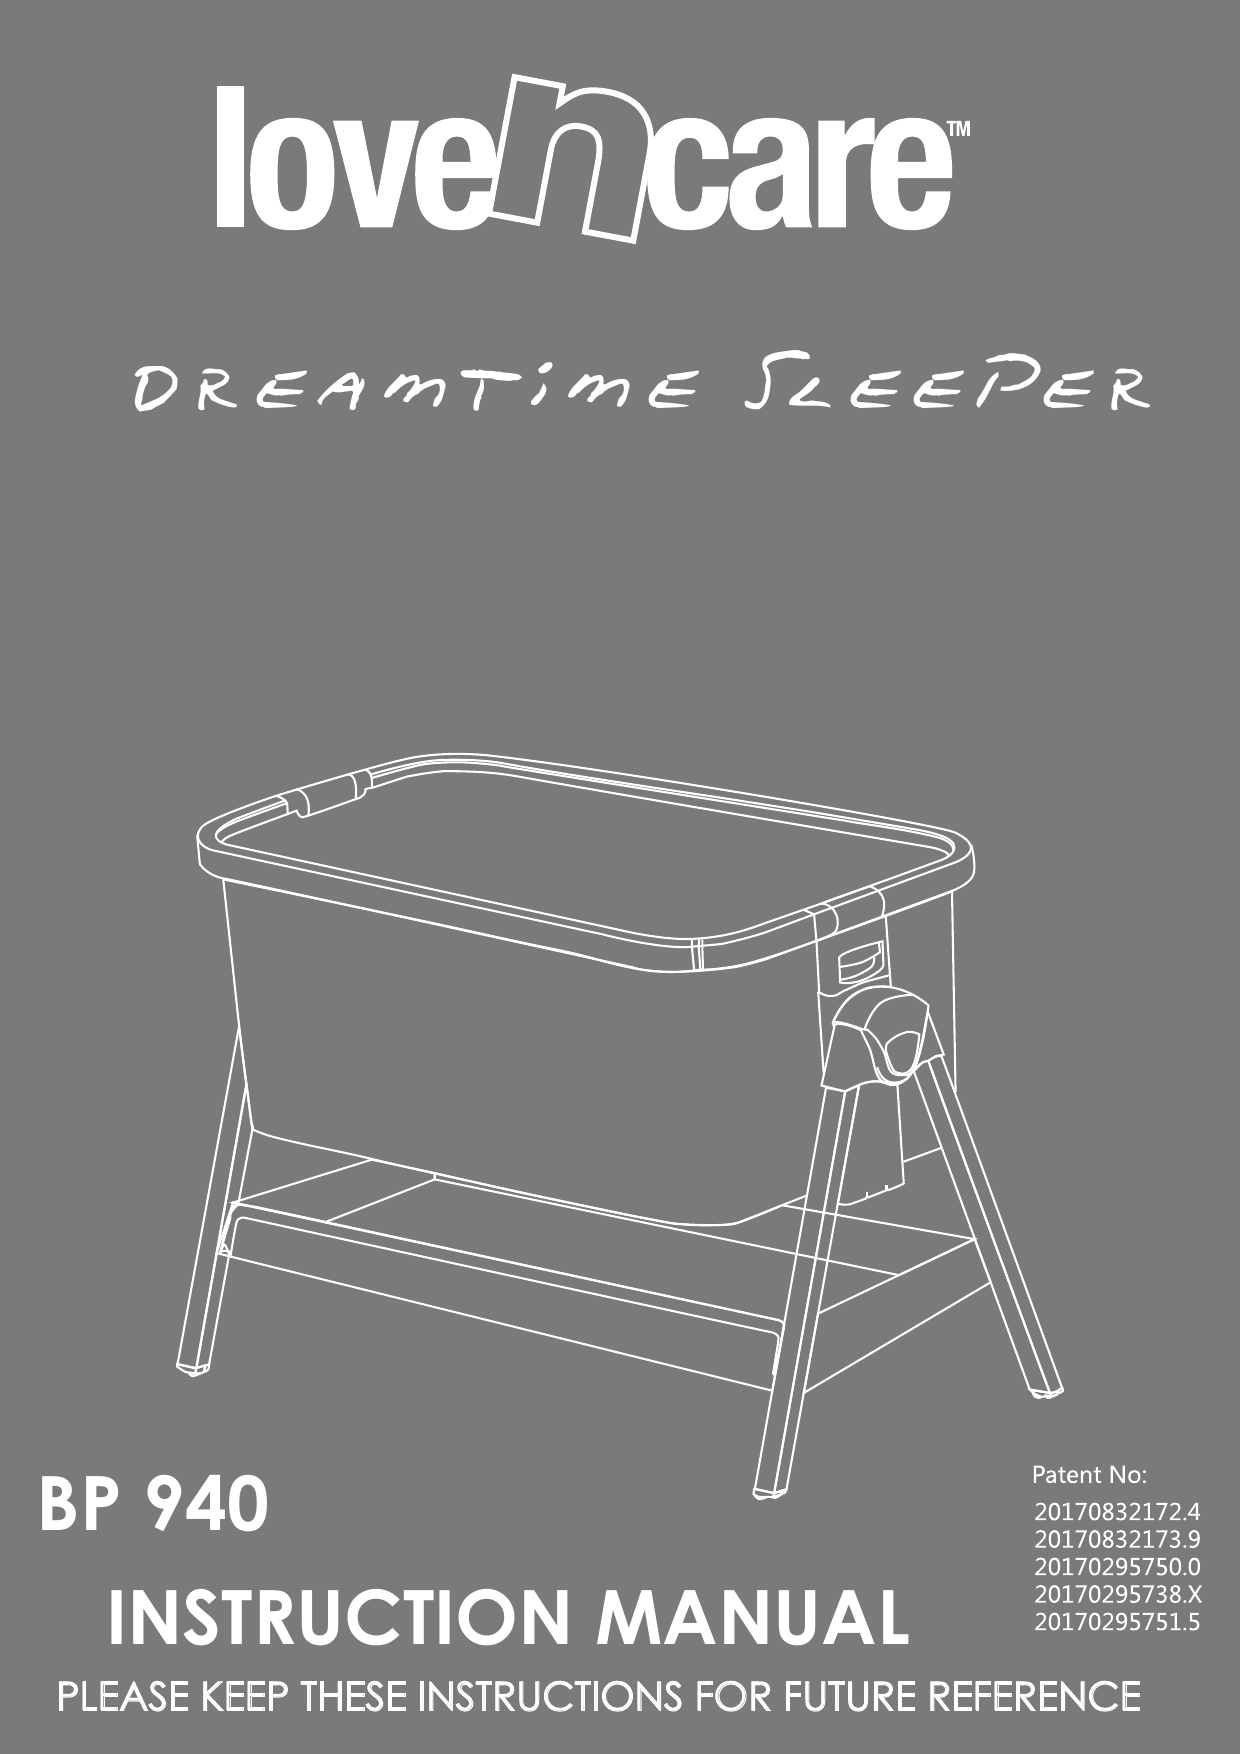 dreamtime sleeper bassinet